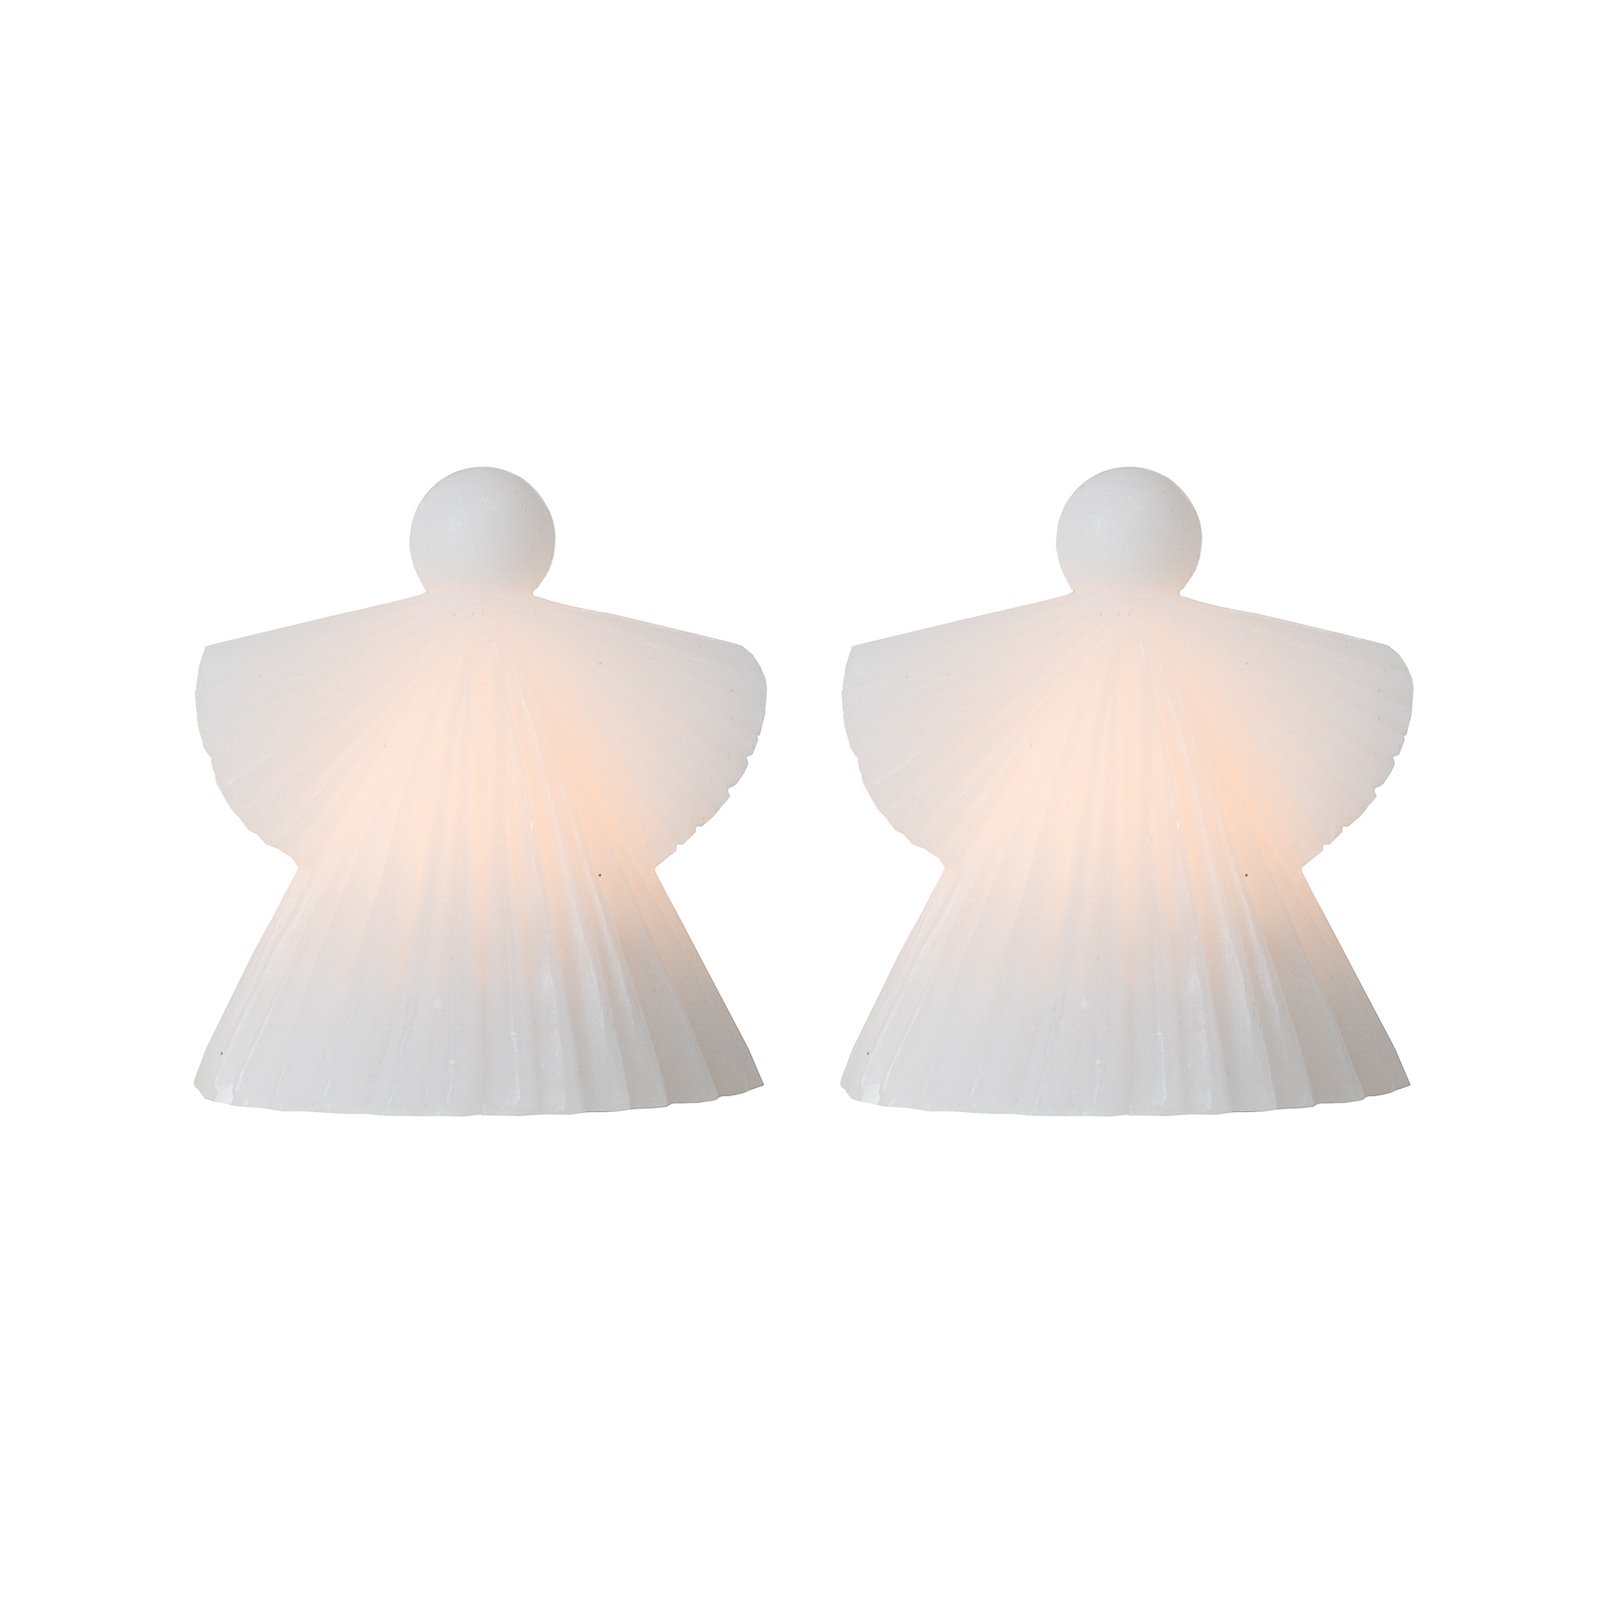 LED ukrasna figura Asta, anđeo, bijeli vosak, 10cm, set 2 kom